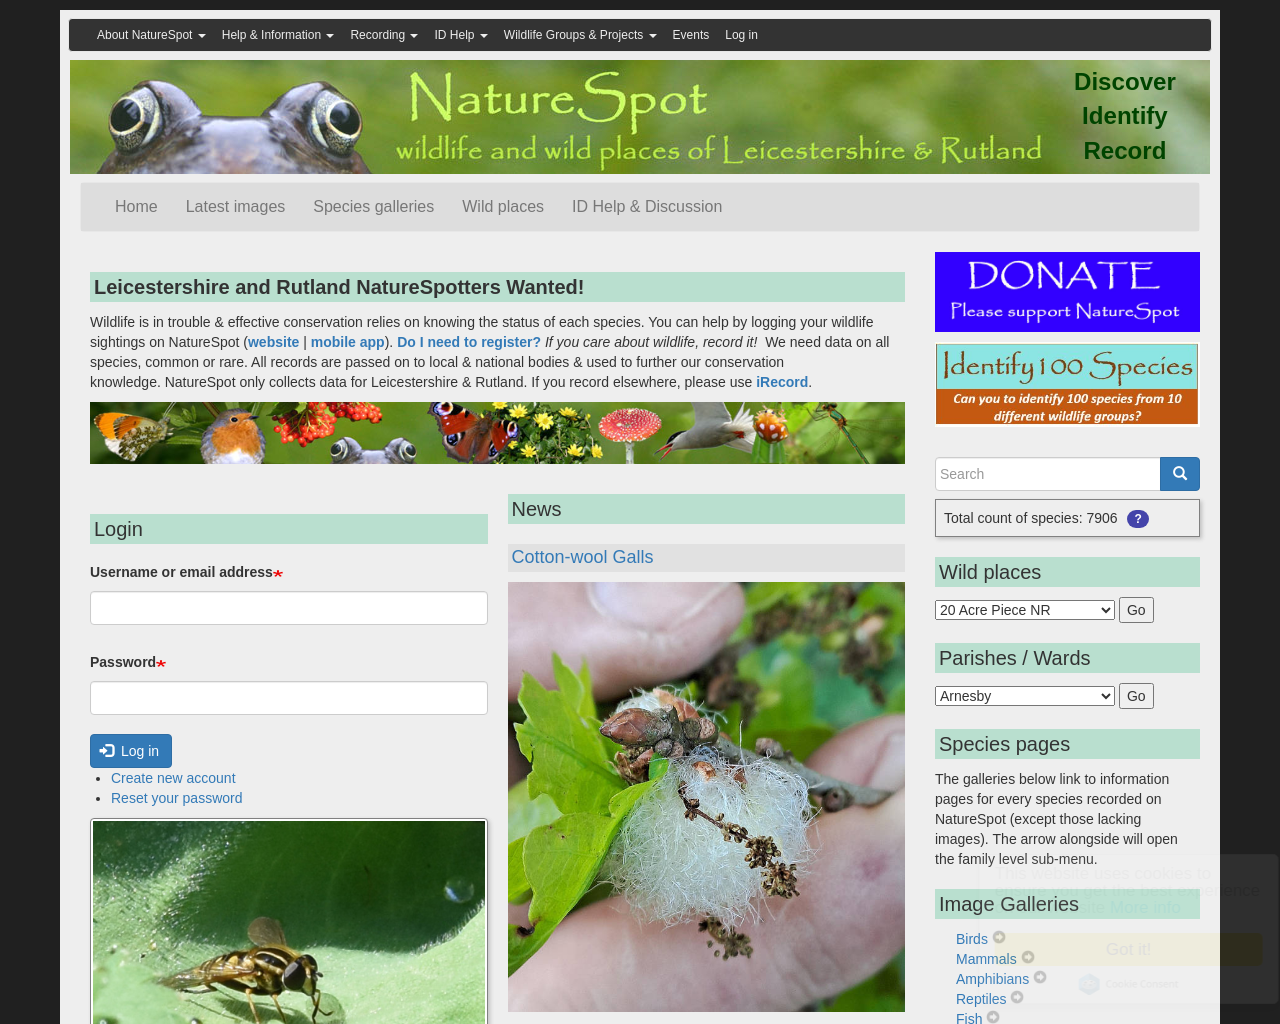 naturespot.org.uk